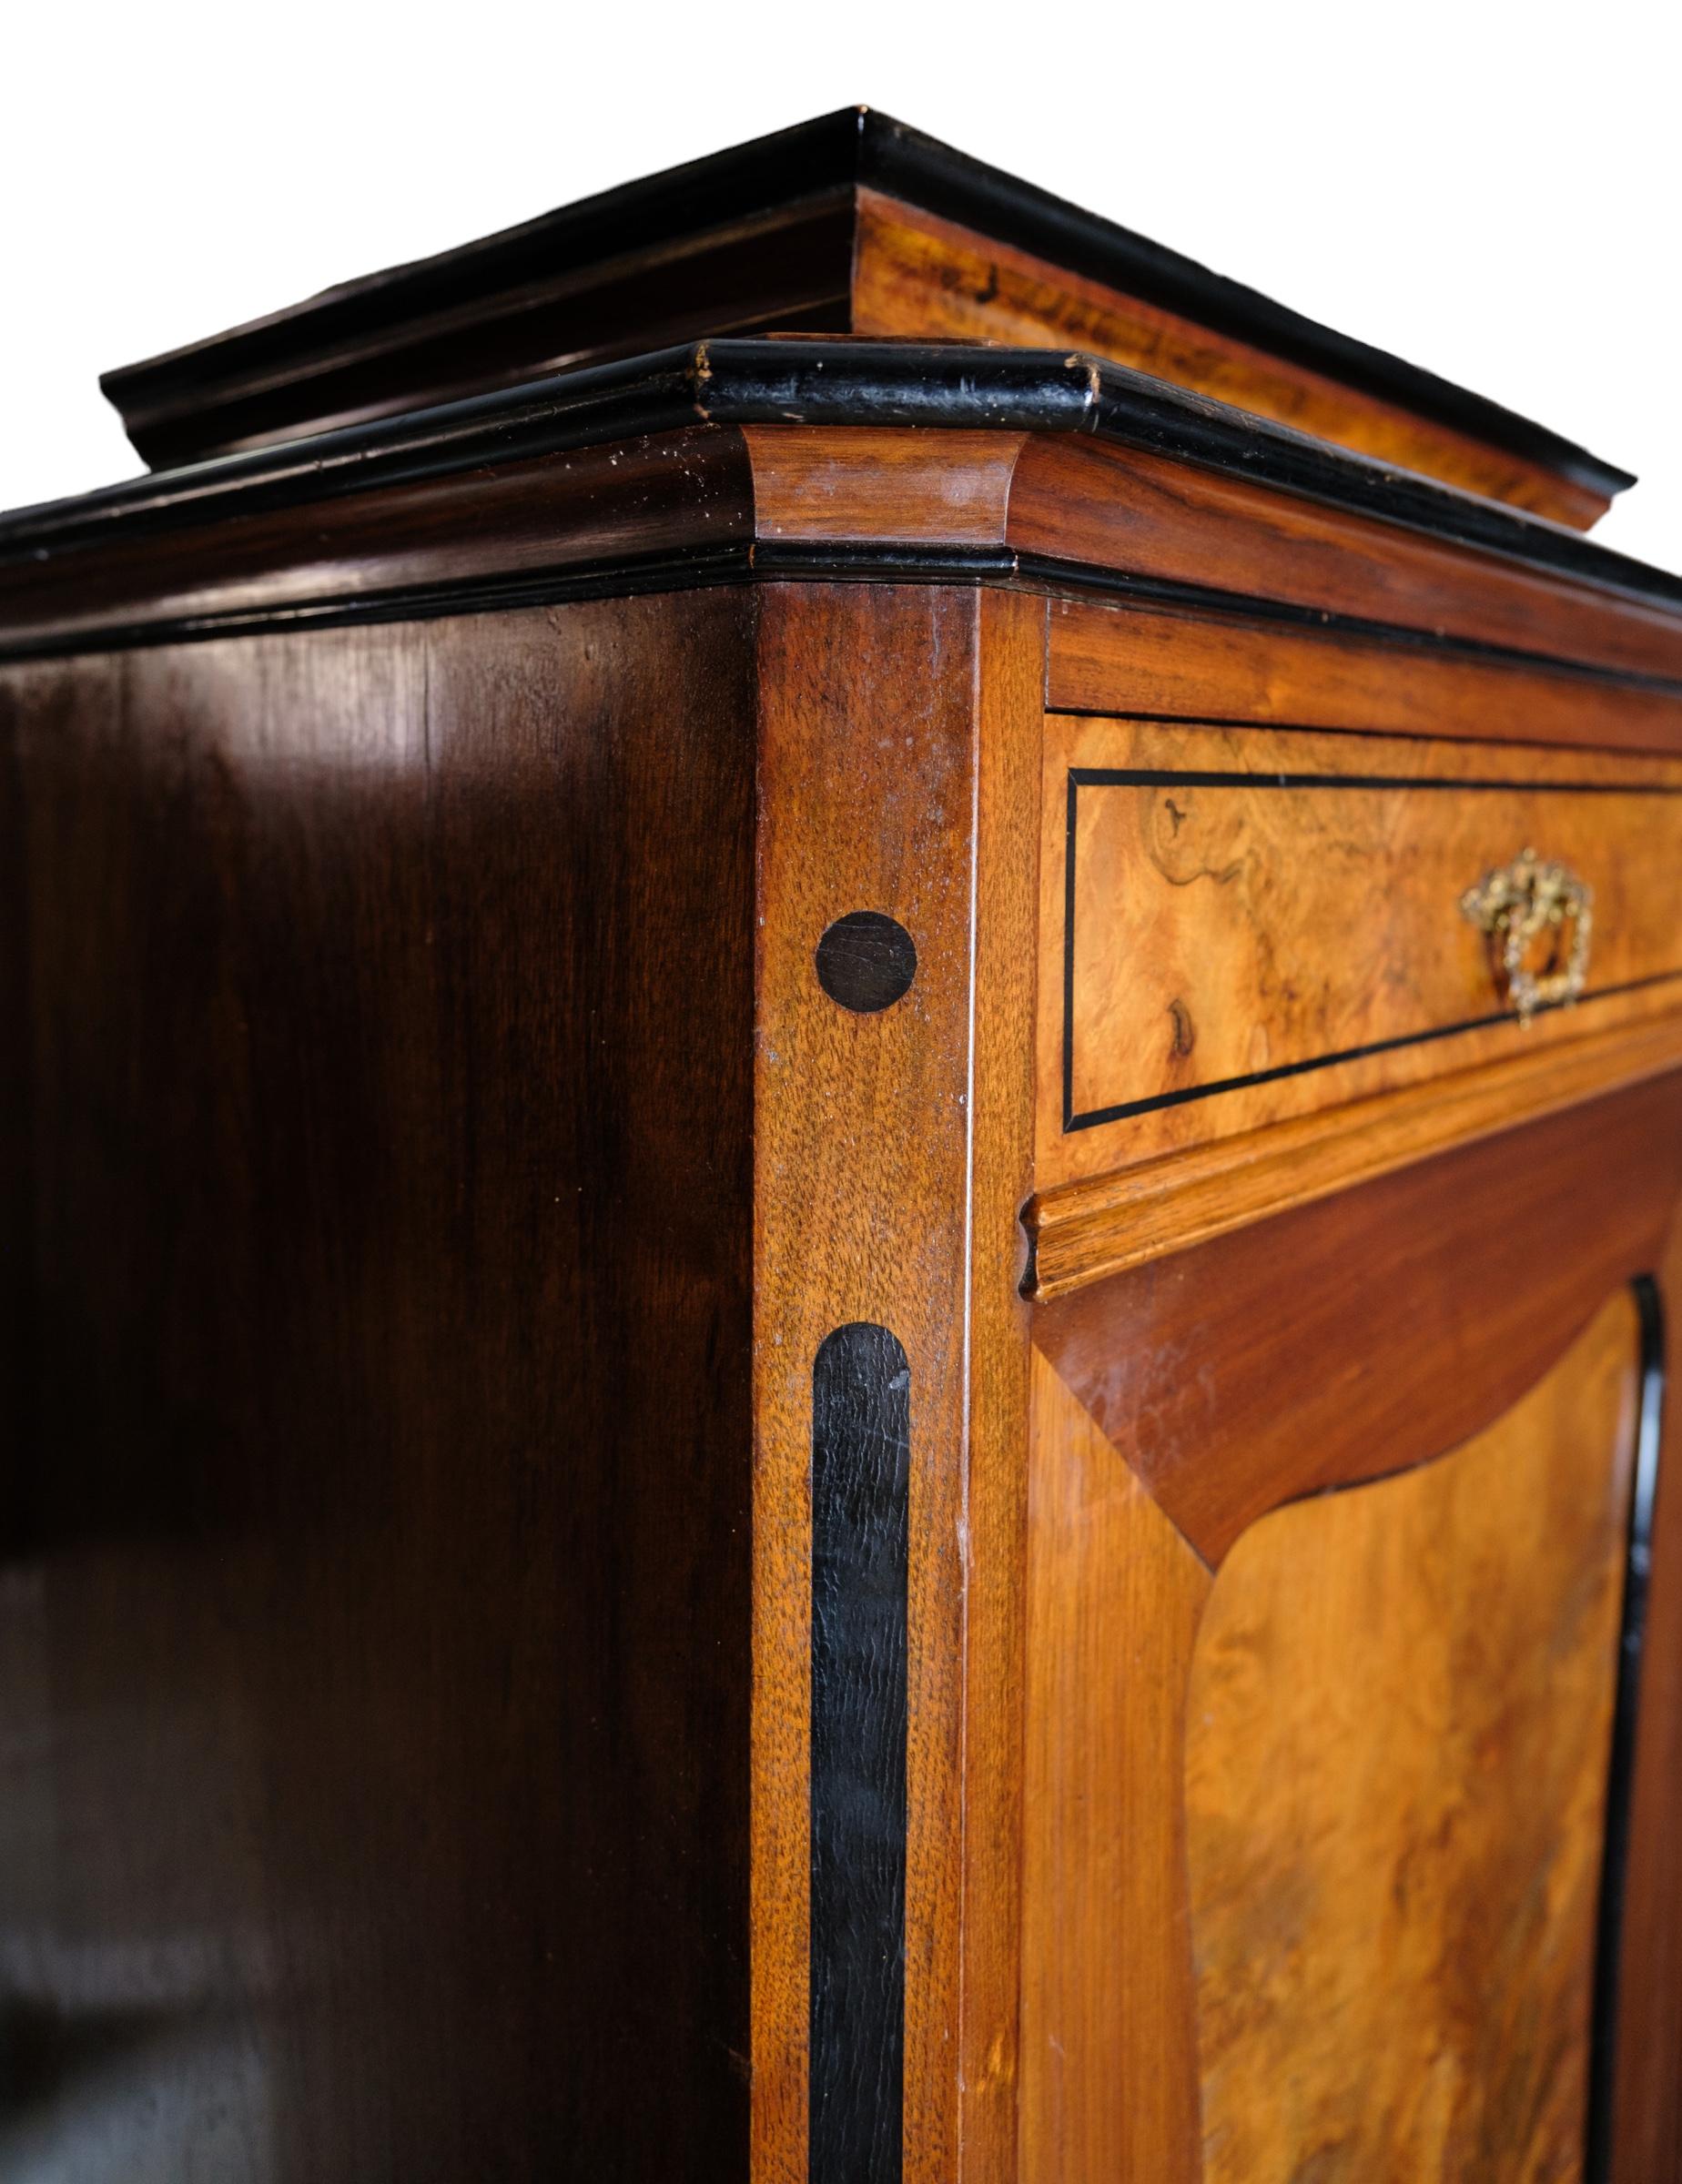 Hochschrank aus poliertem Nussbaum, schöner antiker Zustand mit 2 Schubladen und einer Tür mit Einlegeböden aus den 1850er Jahren
Maße in cm: H:155 B:67 T:43.5